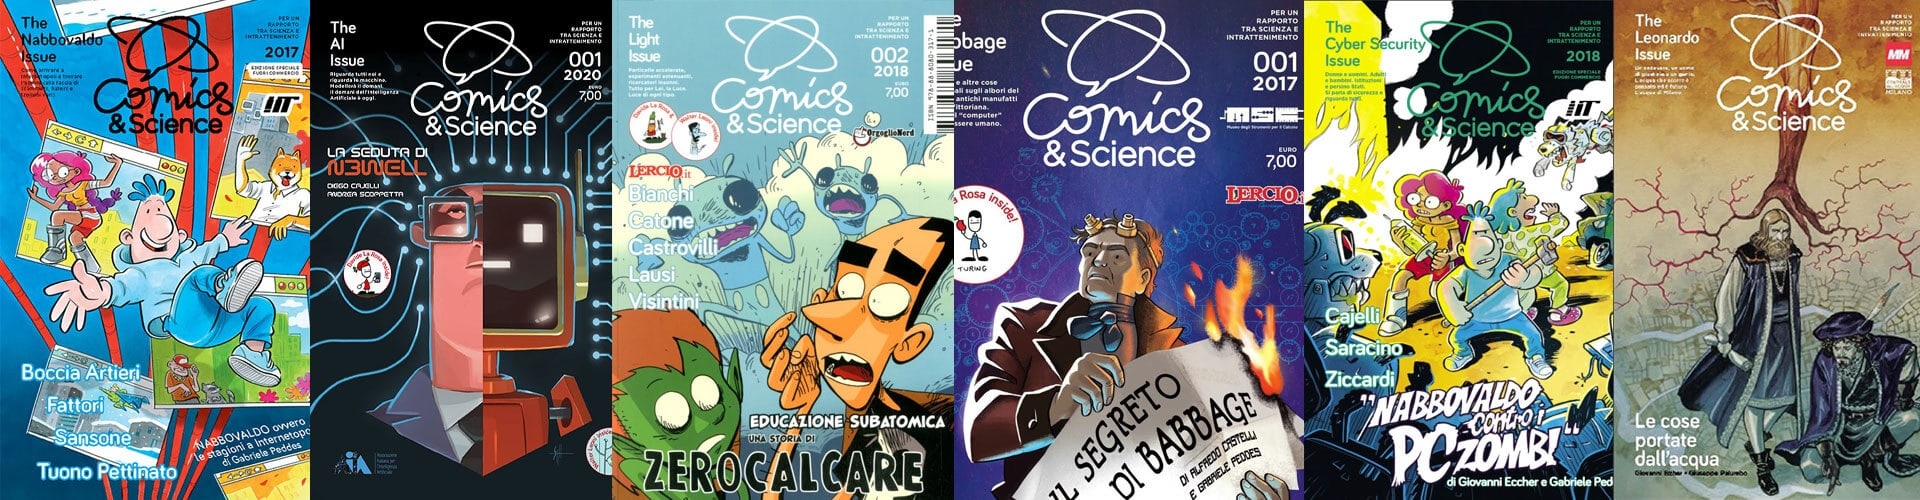 copertine fumetti Comics & Science